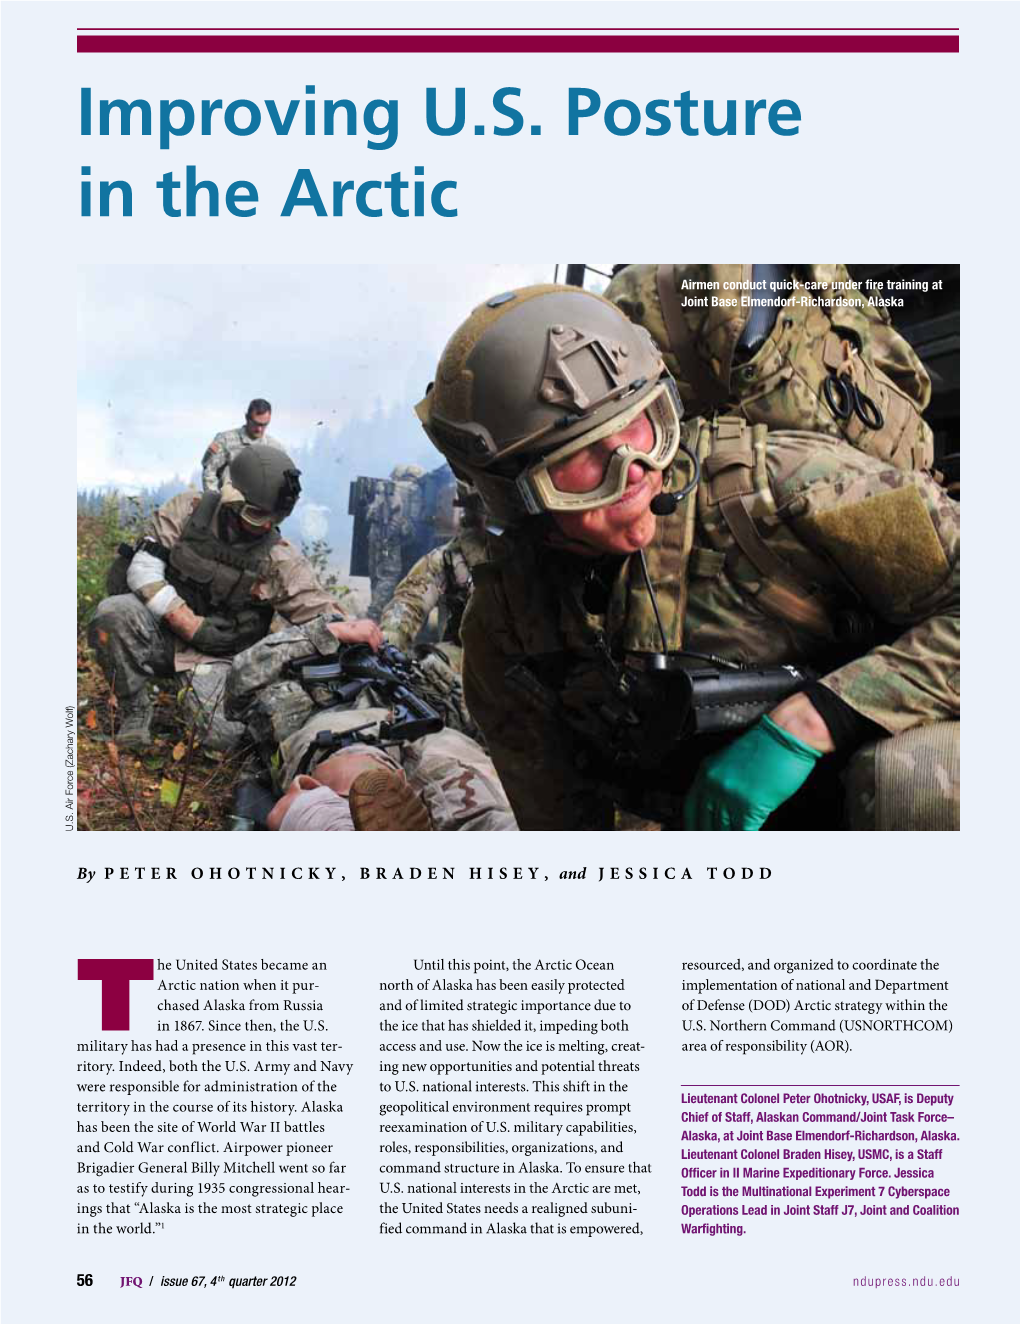 Improving U.S. Posture in the Arctic